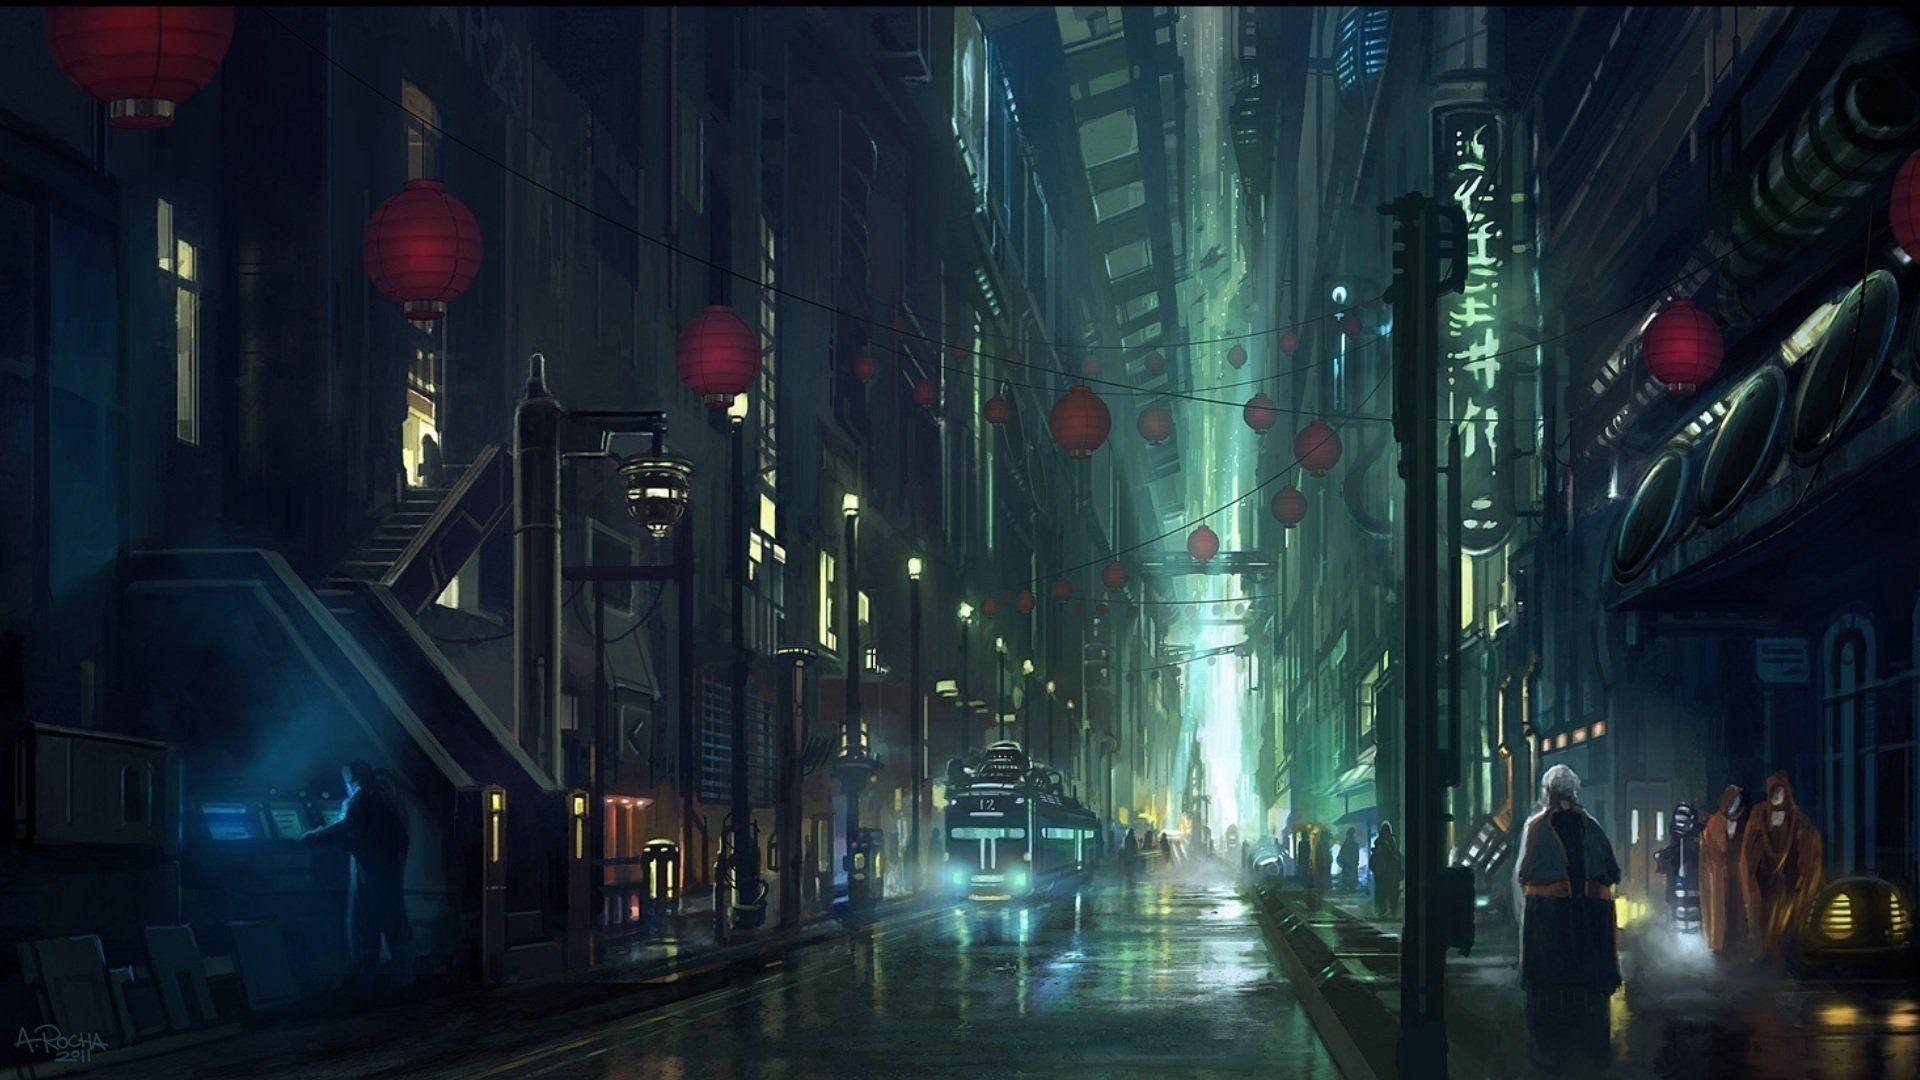 Blade Runner Art Wallpapers Top Free Blade Runner Art Backgrounds Wallpaperaccess